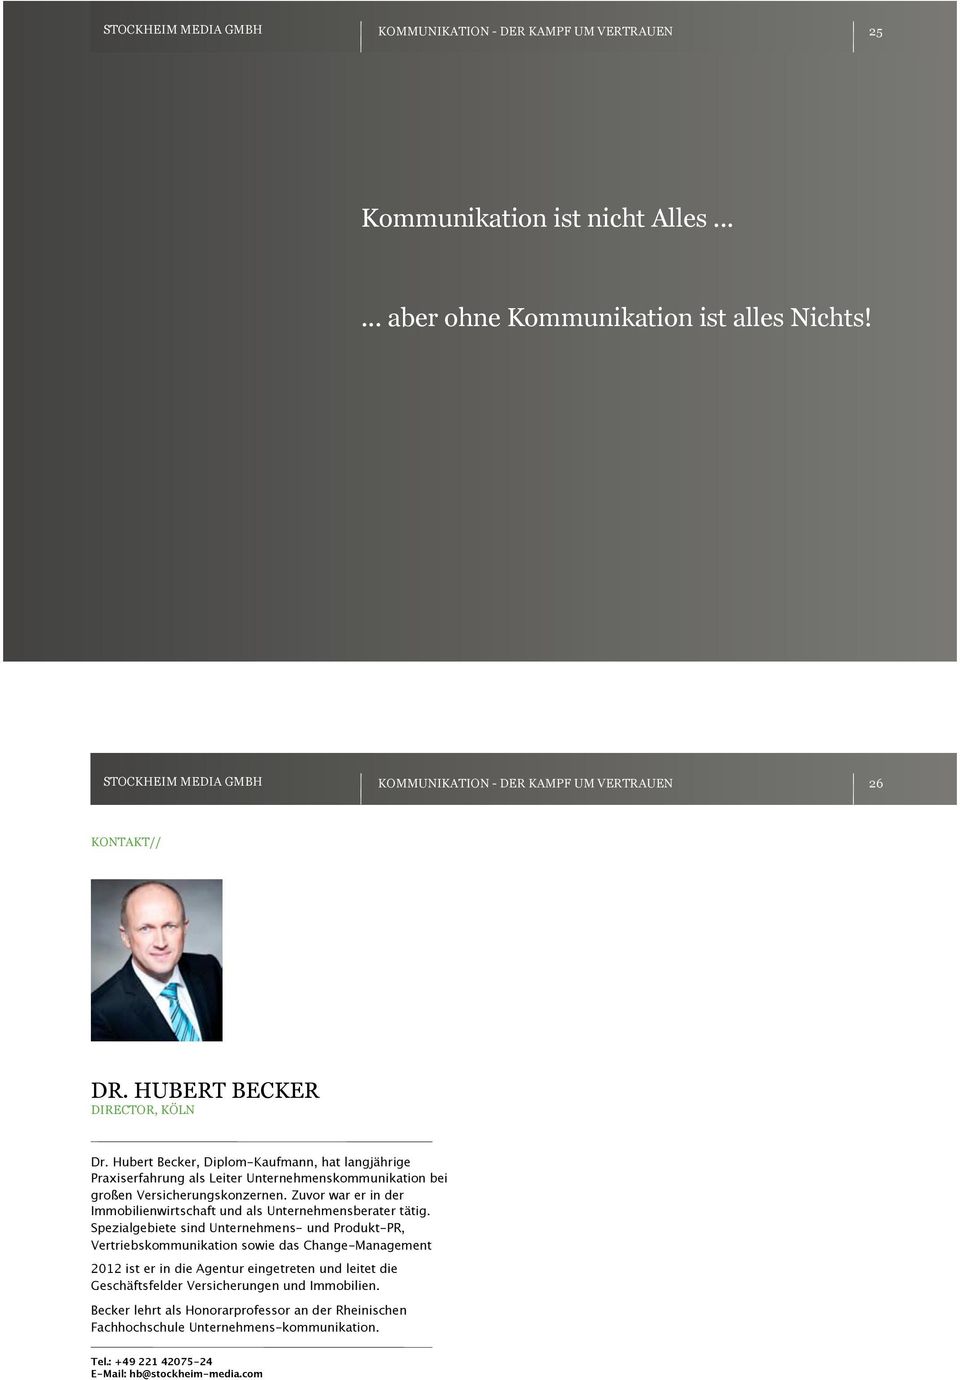 Hubert Becker, Diplom-Kaufmann, hat langjährige Praxiserfahrung als Leiter Unternehmenskommunikation bei großen Versicherungskonzernen.